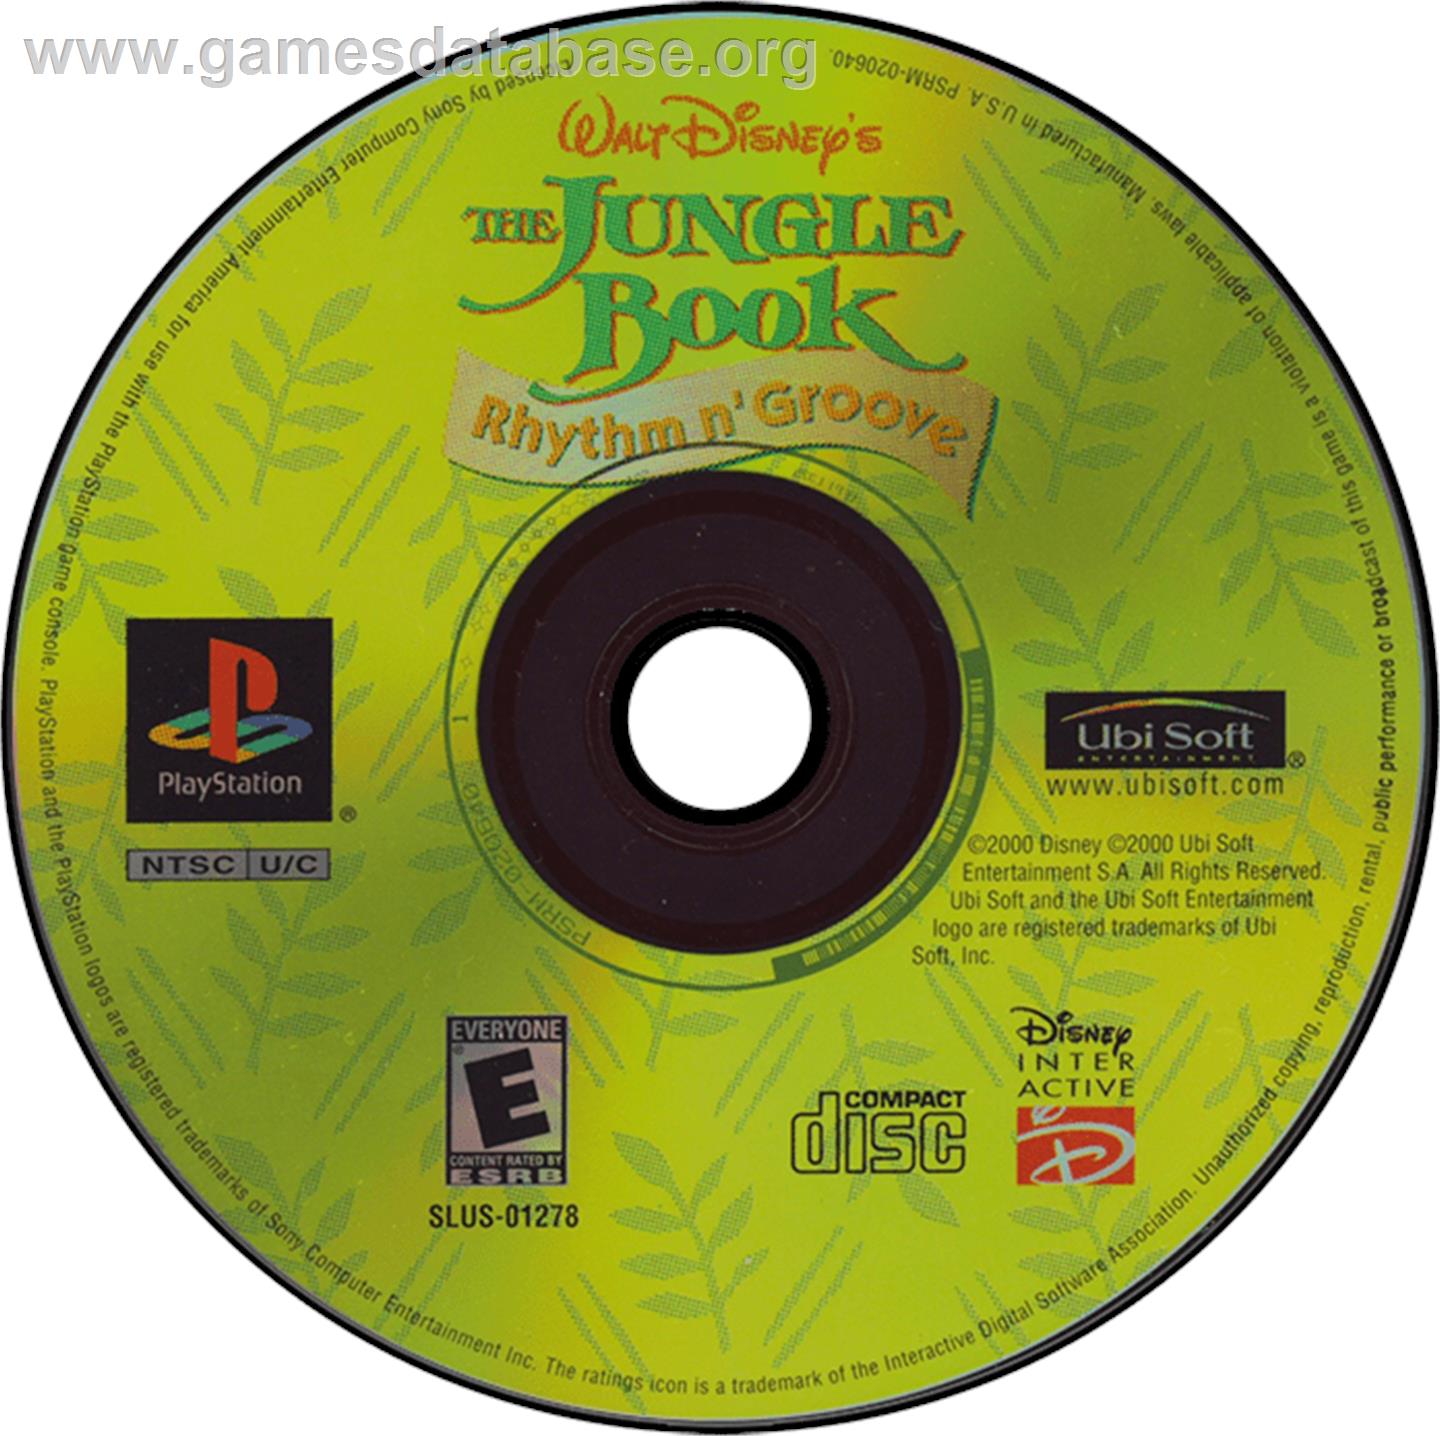 Walt Disney's The Jungle Book: Rhythm n' Groove - Sony Playstation - Artwork - Disc